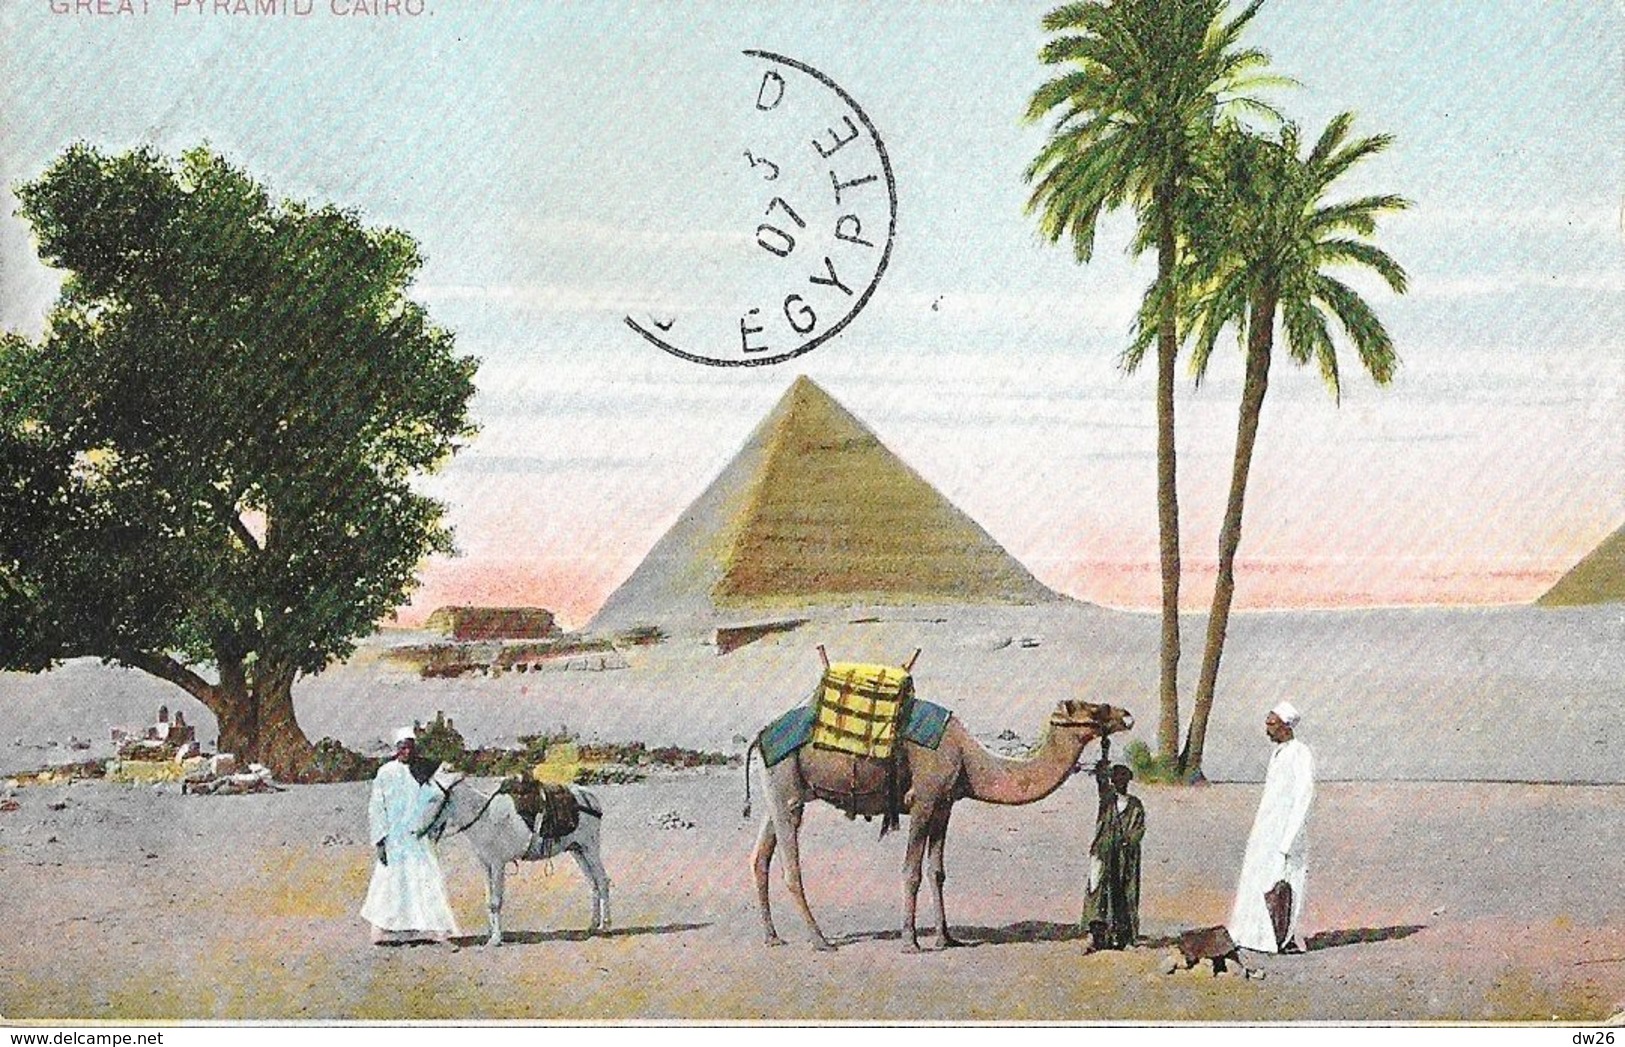 Le Caire, Les Pyramides (Great Pyramid, Cairo) - Th. E.L. Série 945 - Carte Non écrite - Le Caire